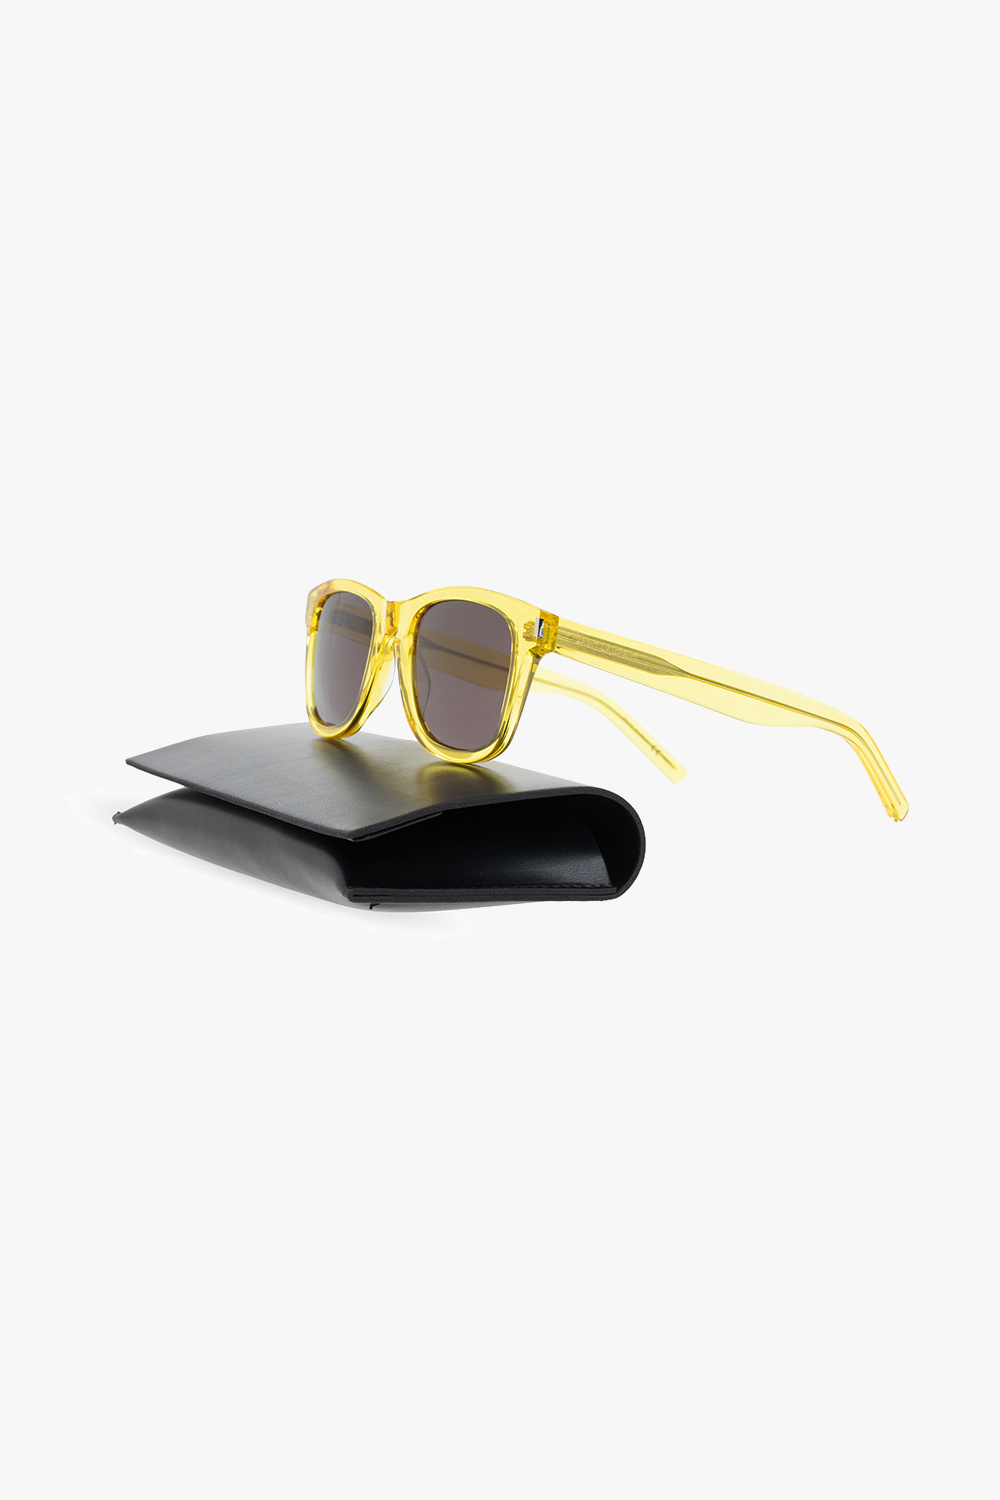 Louis Vuitton LV Rise Square Sunglasses - Vitkac shop online